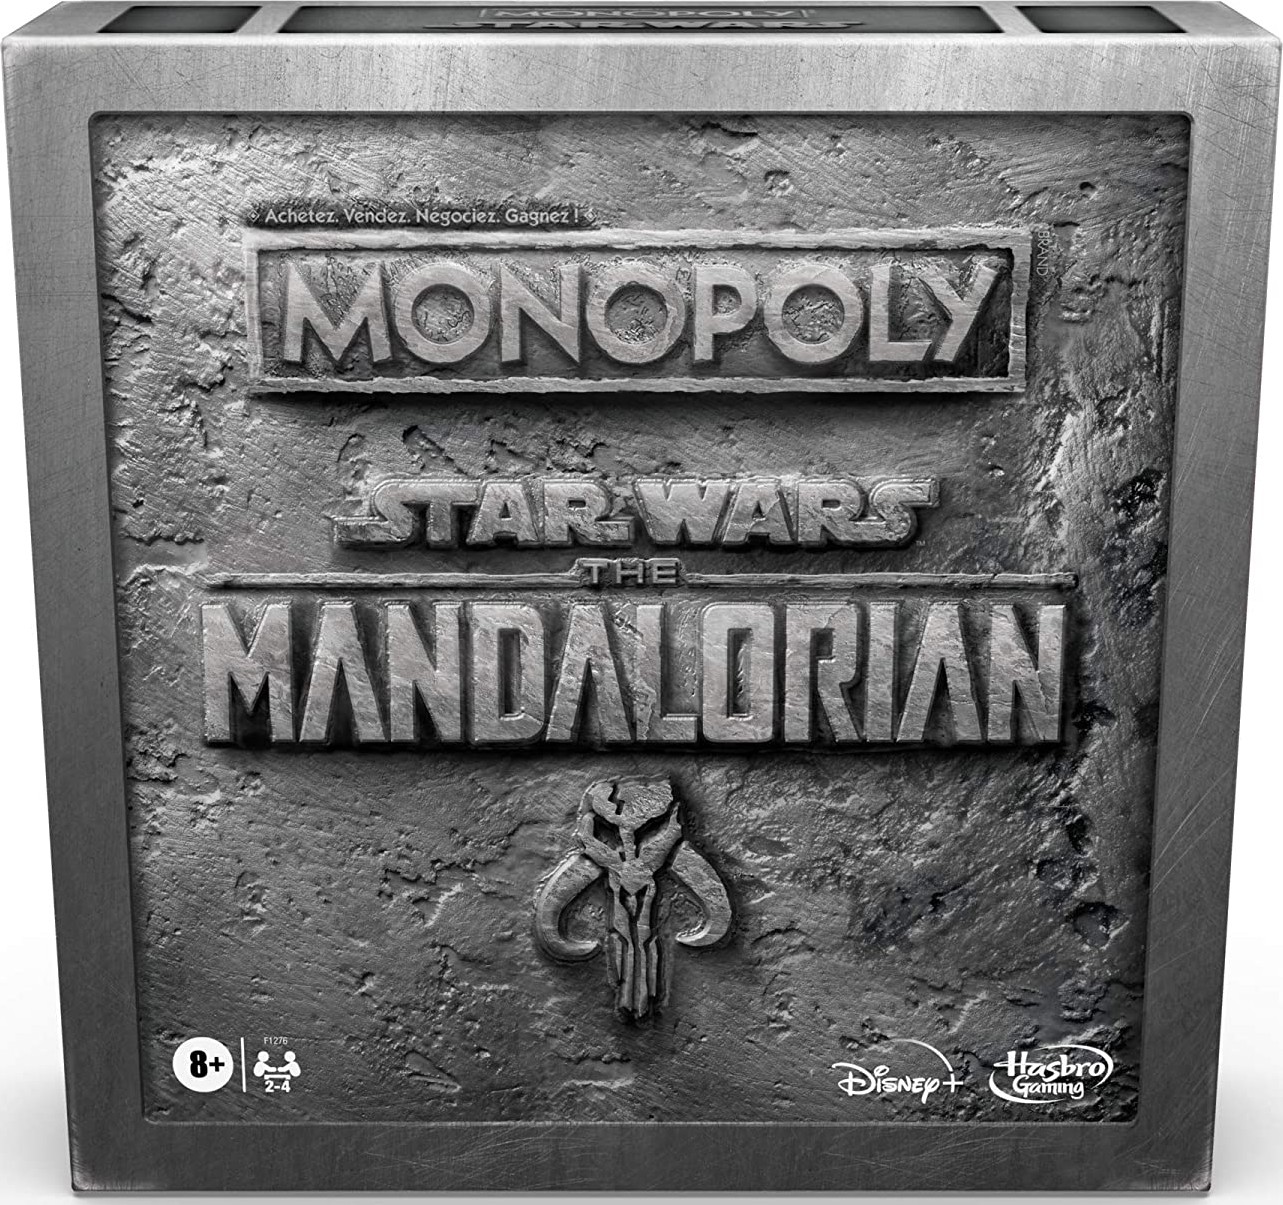 Boite du Monopoly Star Wars : The Mandalorian